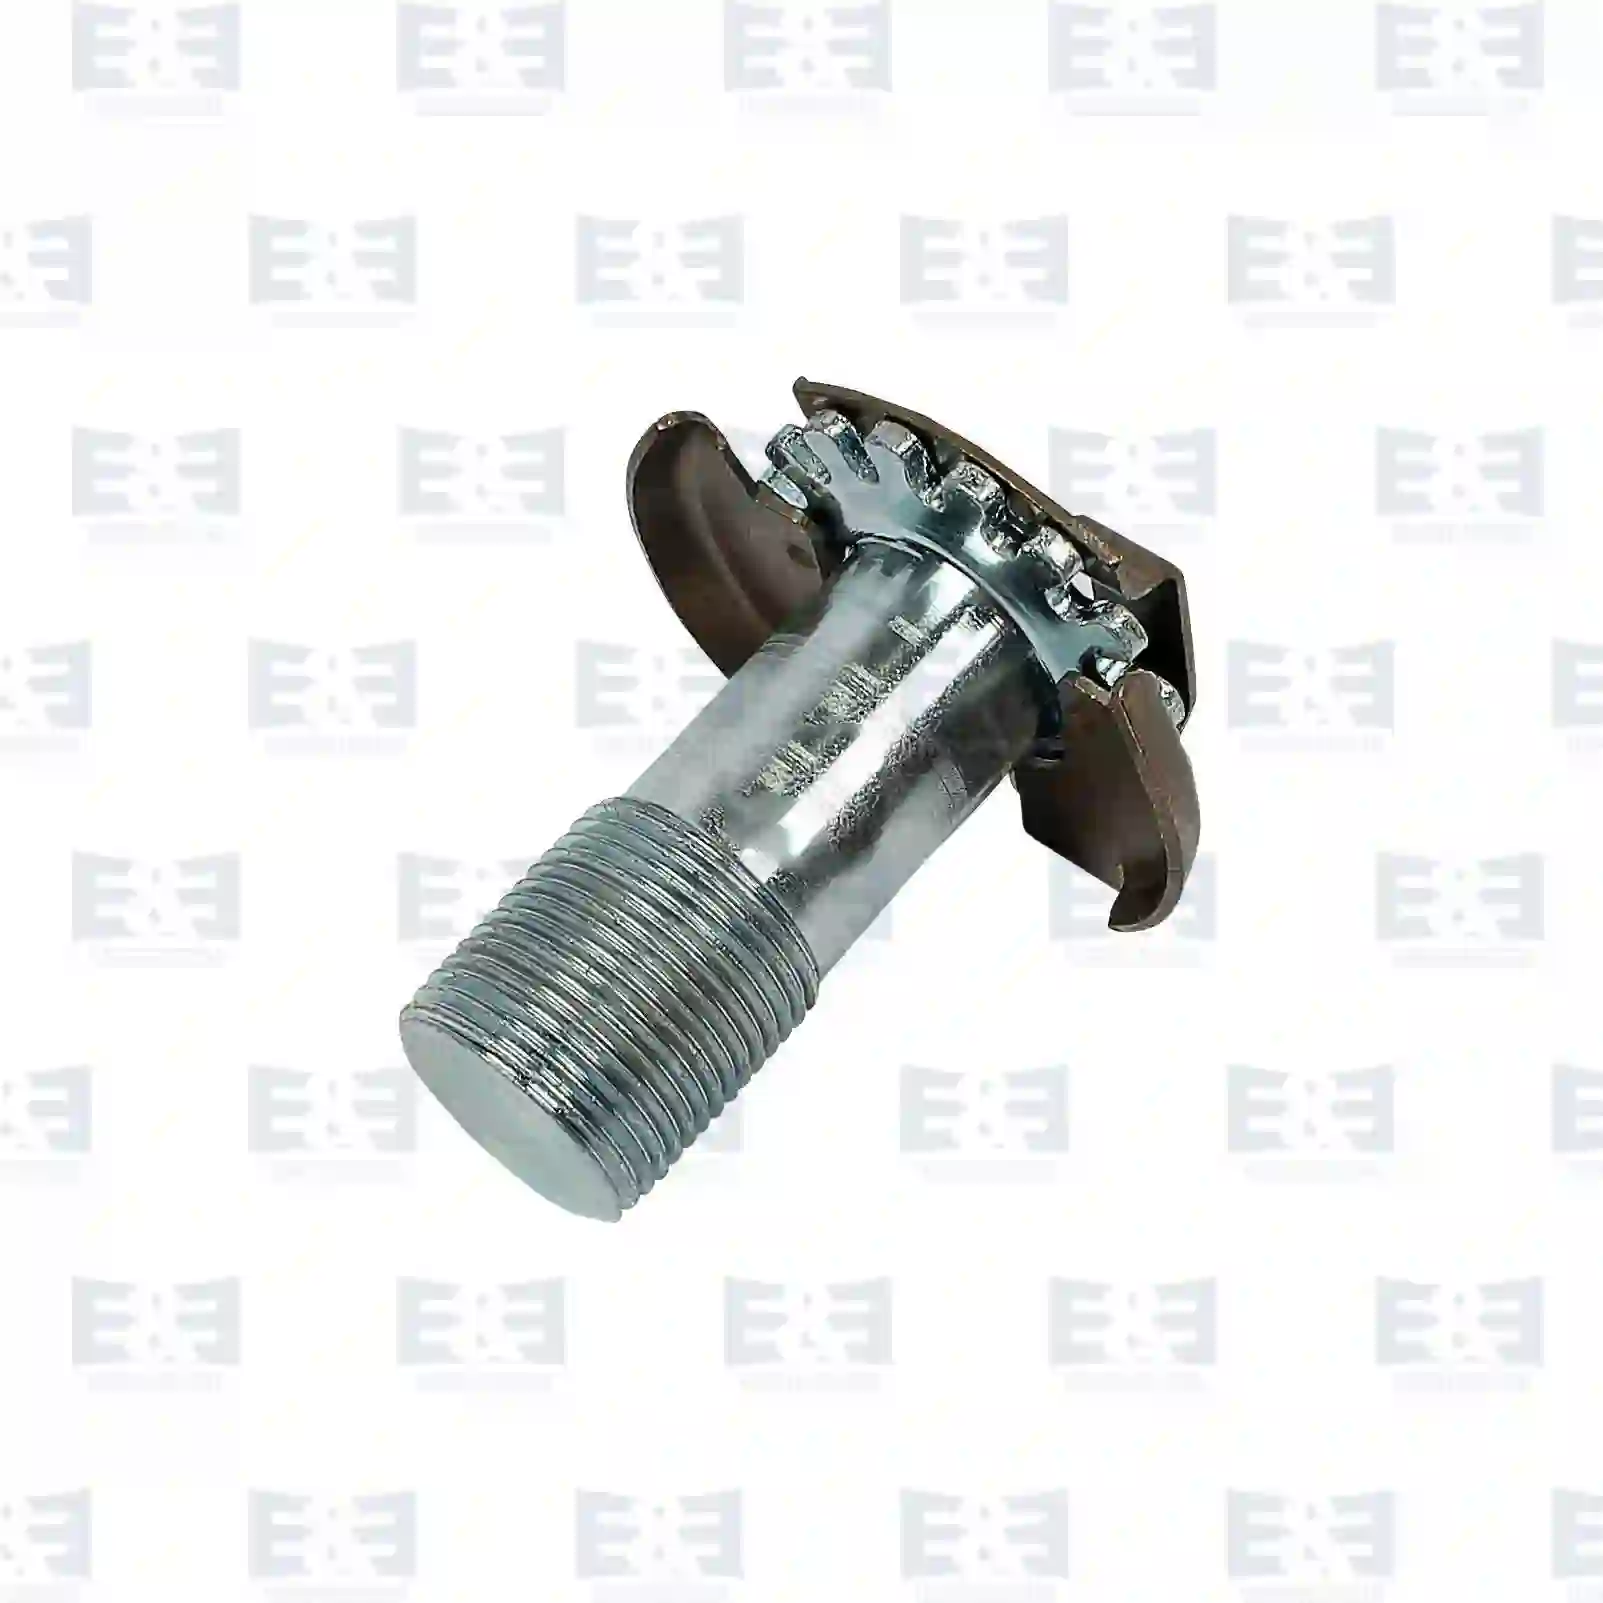  Adjusting bolt || E&E Truck Spare Parts | Truck Spare Parts, Auotomotive Spare Parts